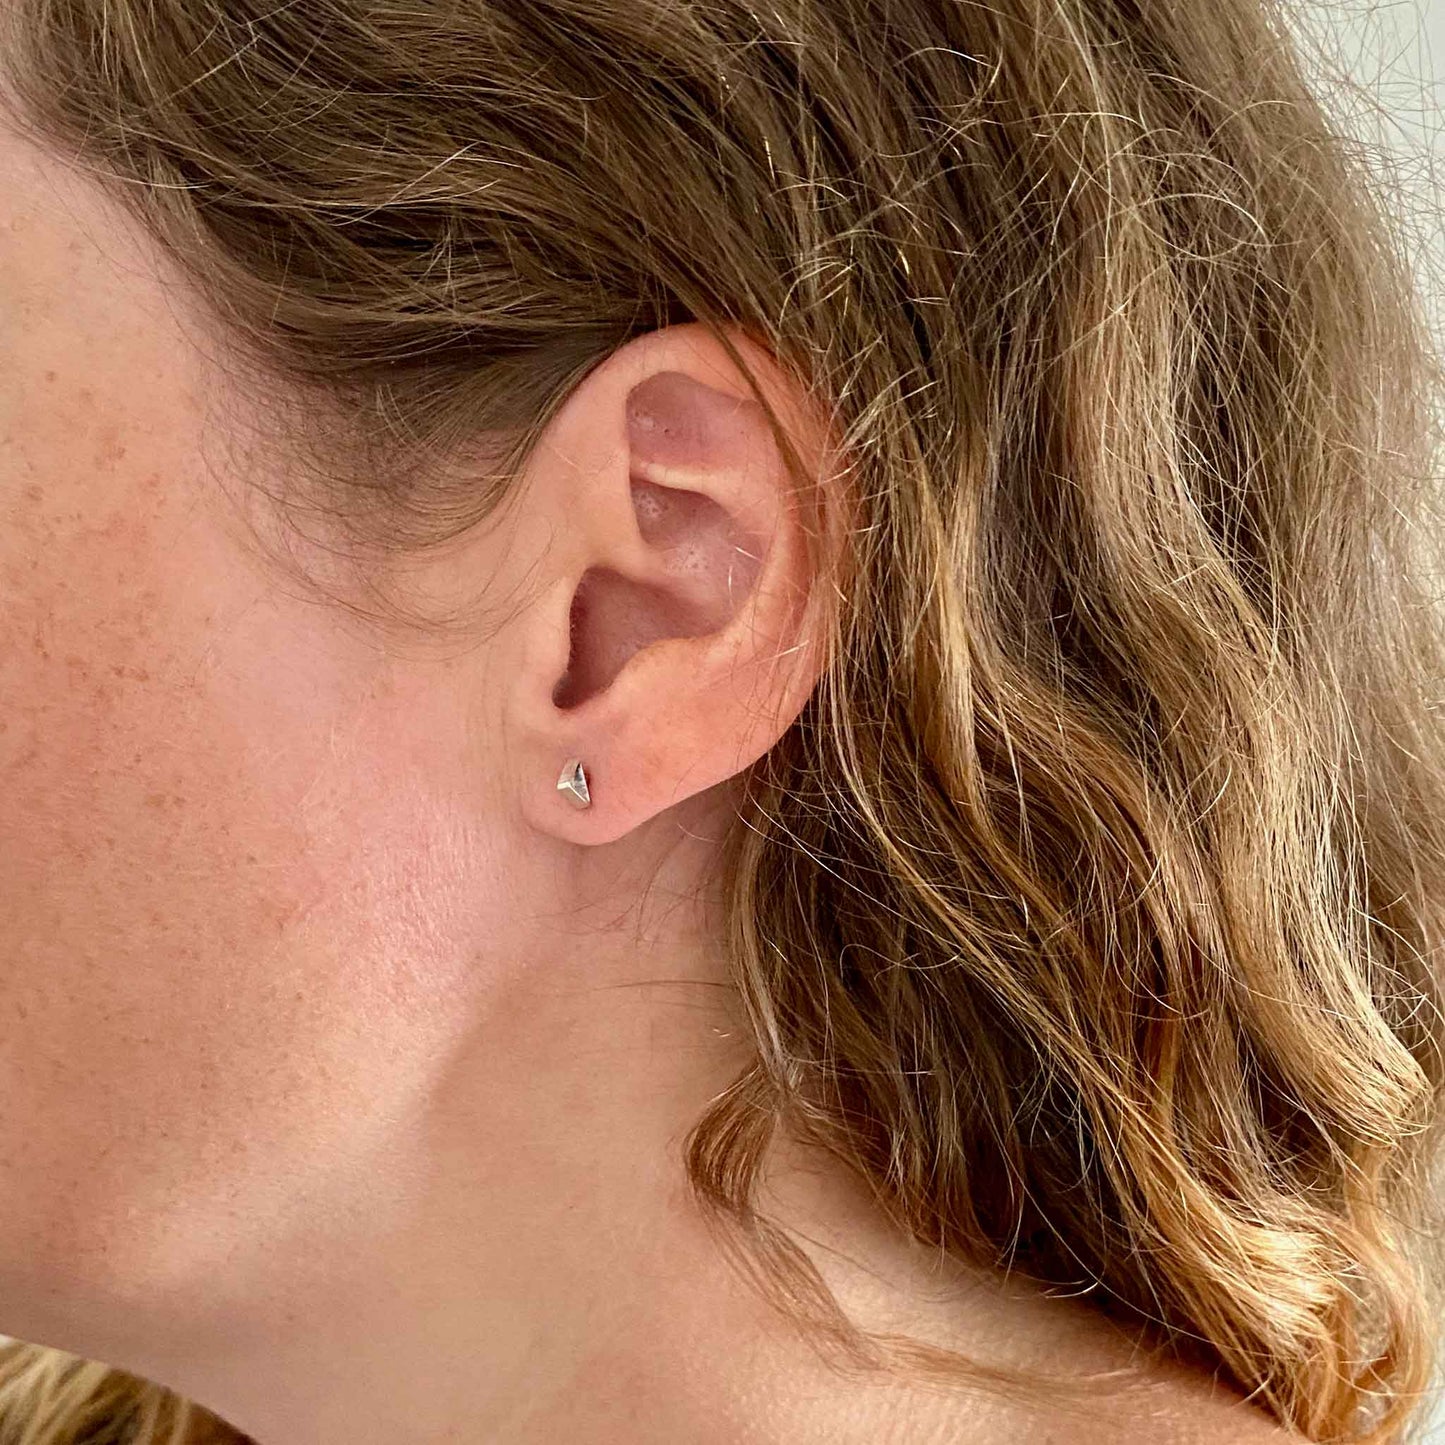 Katy wearing Triangle Tube Silver Stud earrings